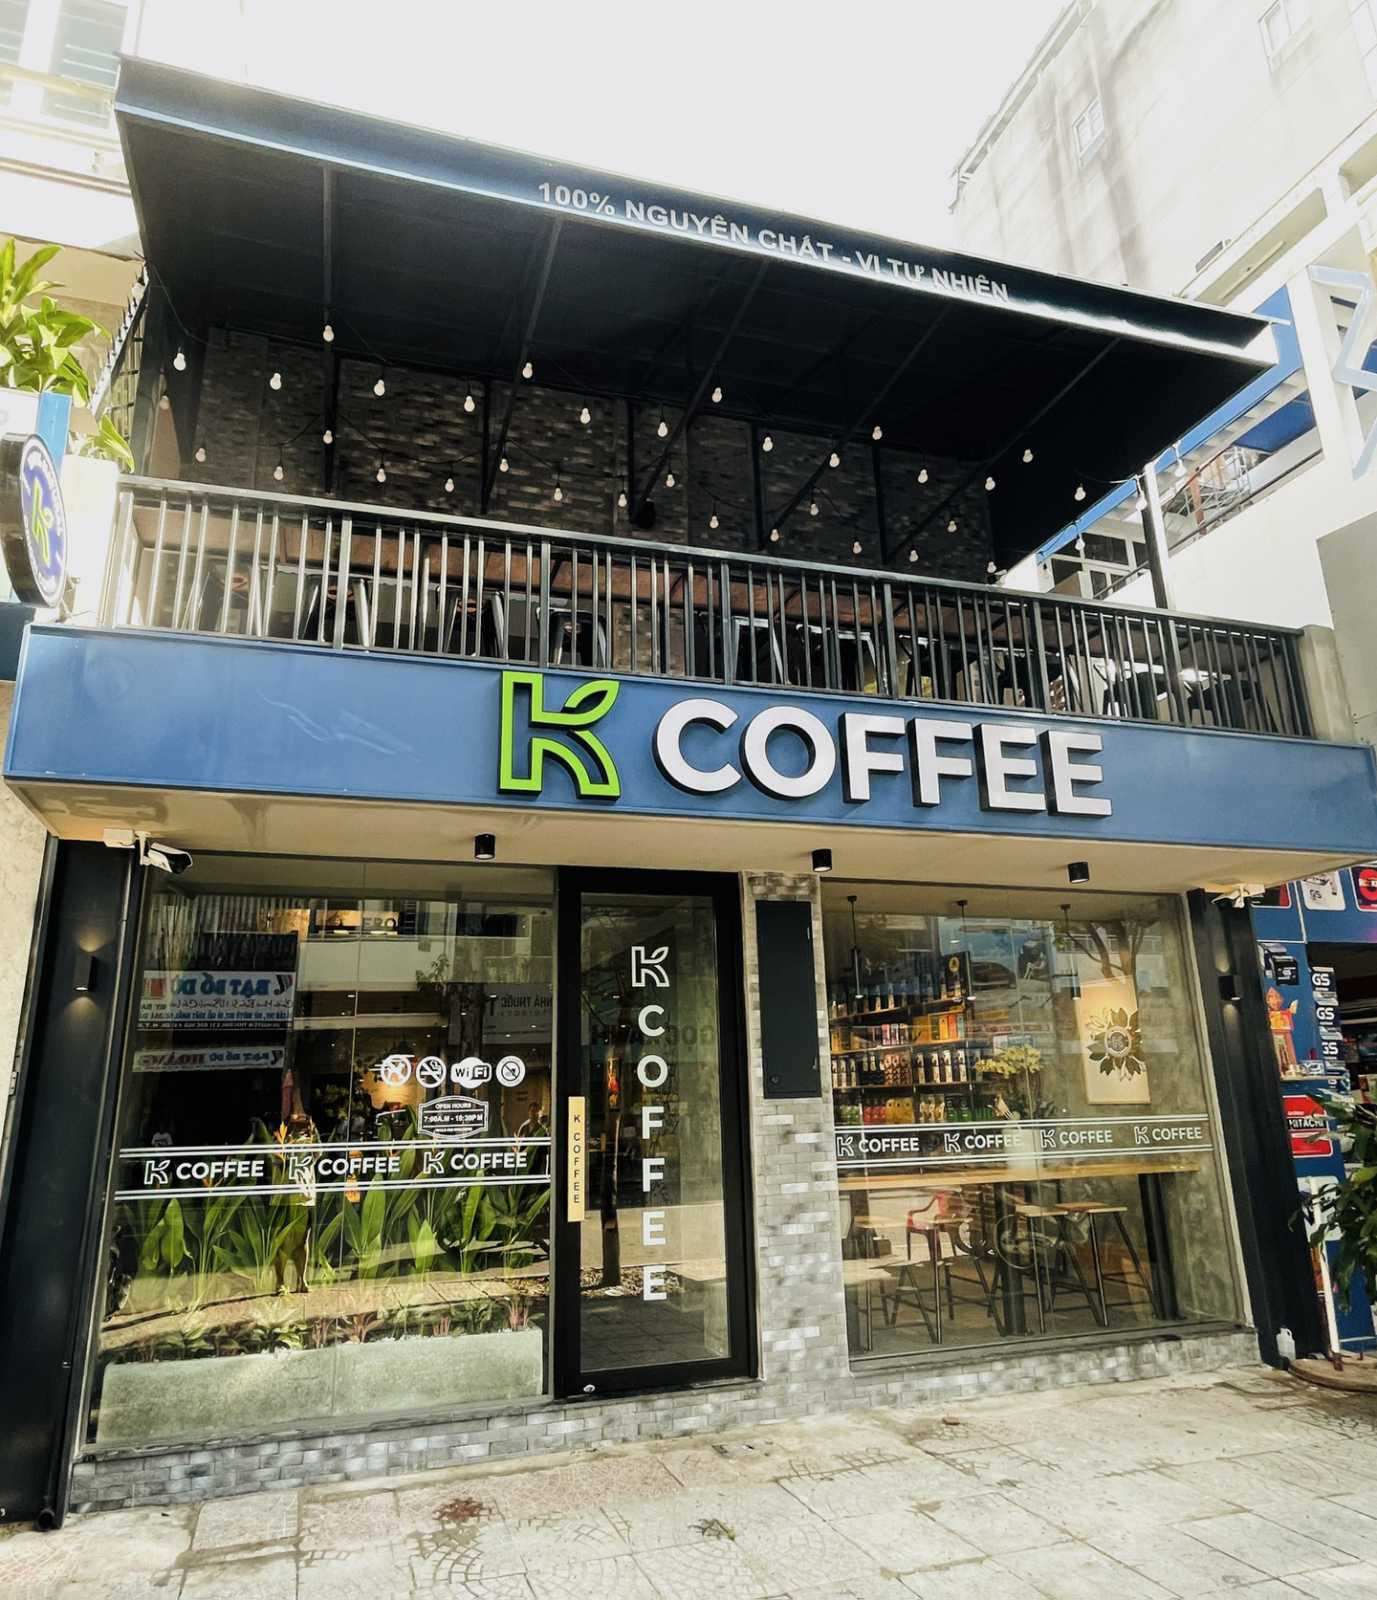 Ông chủ chuỗi K COFFEE: Chỉ bán cà phê nguyên chất - Ảnh 2.